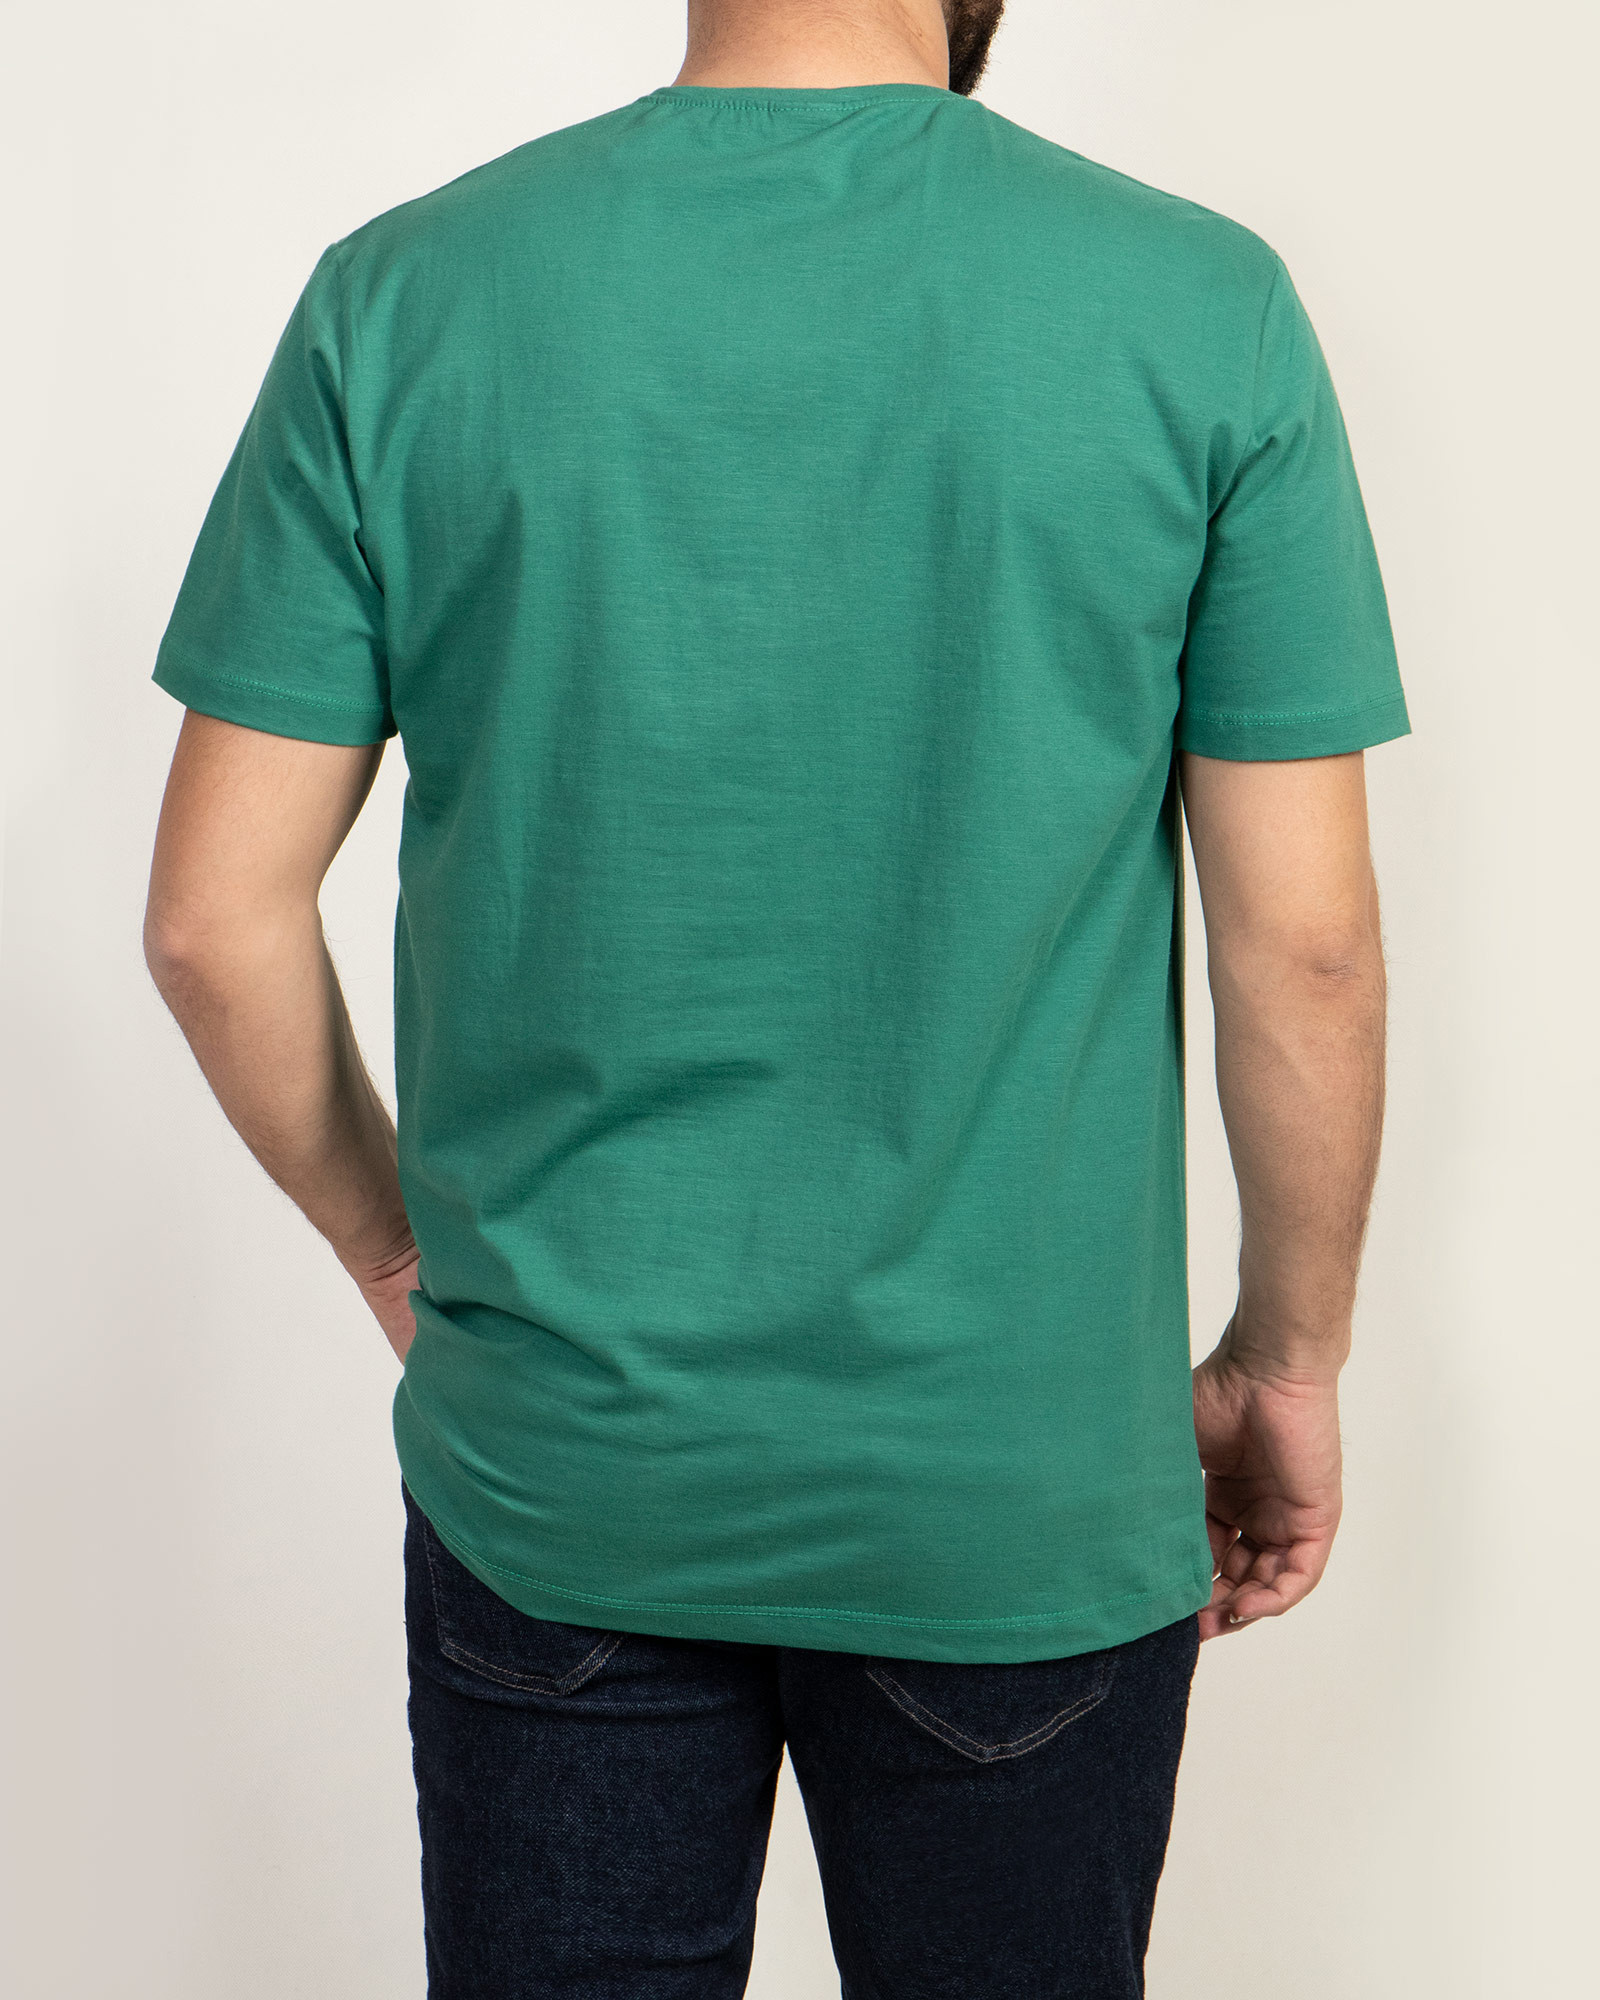 خرید اینترنتی تیشرت سبز مردانه چاپ دار 19429331